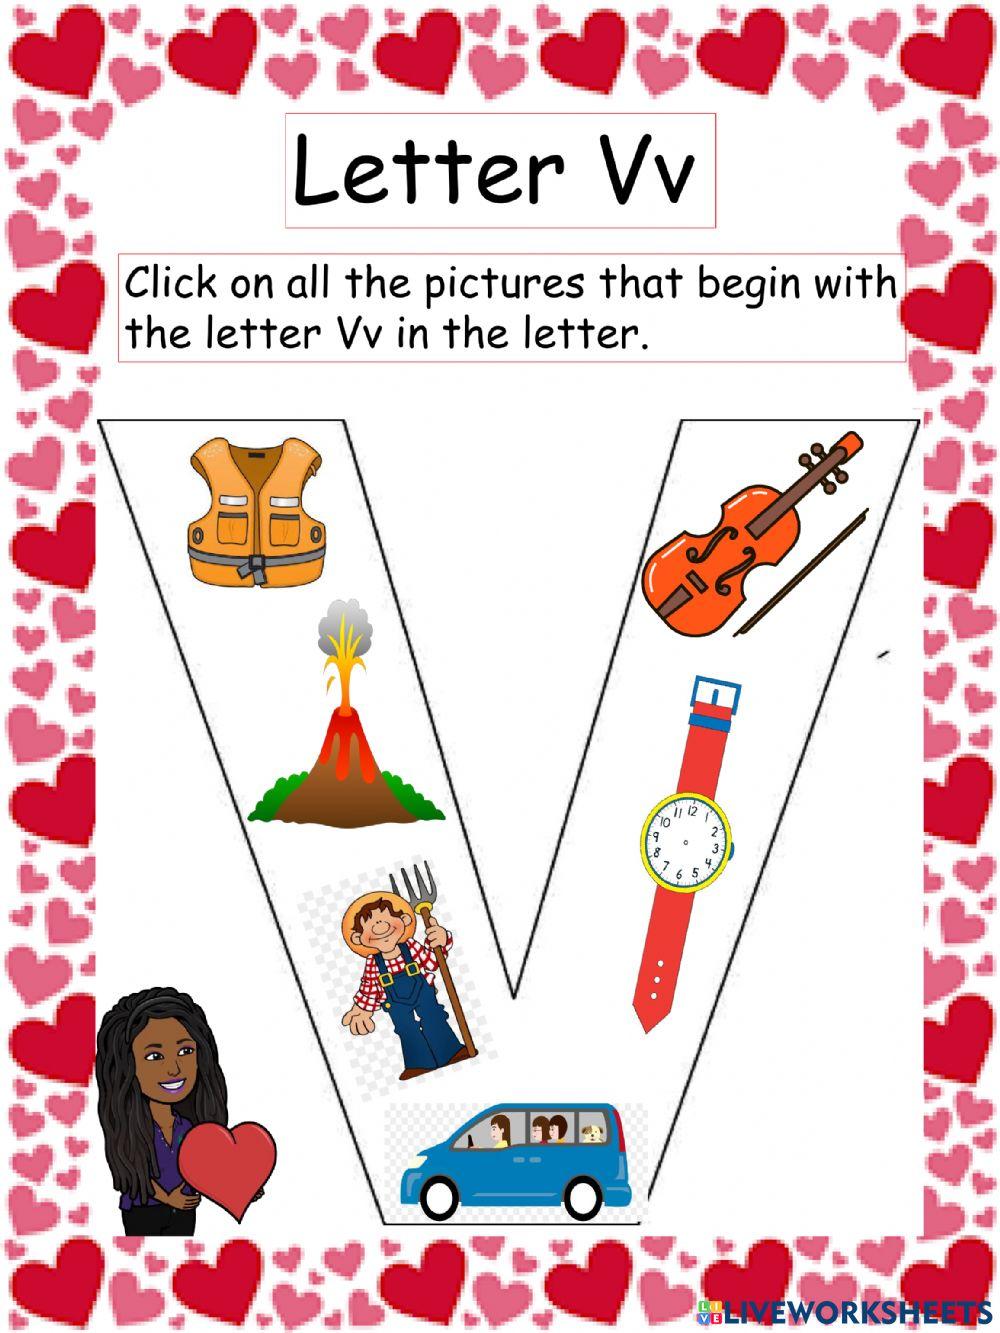 Letter Vv